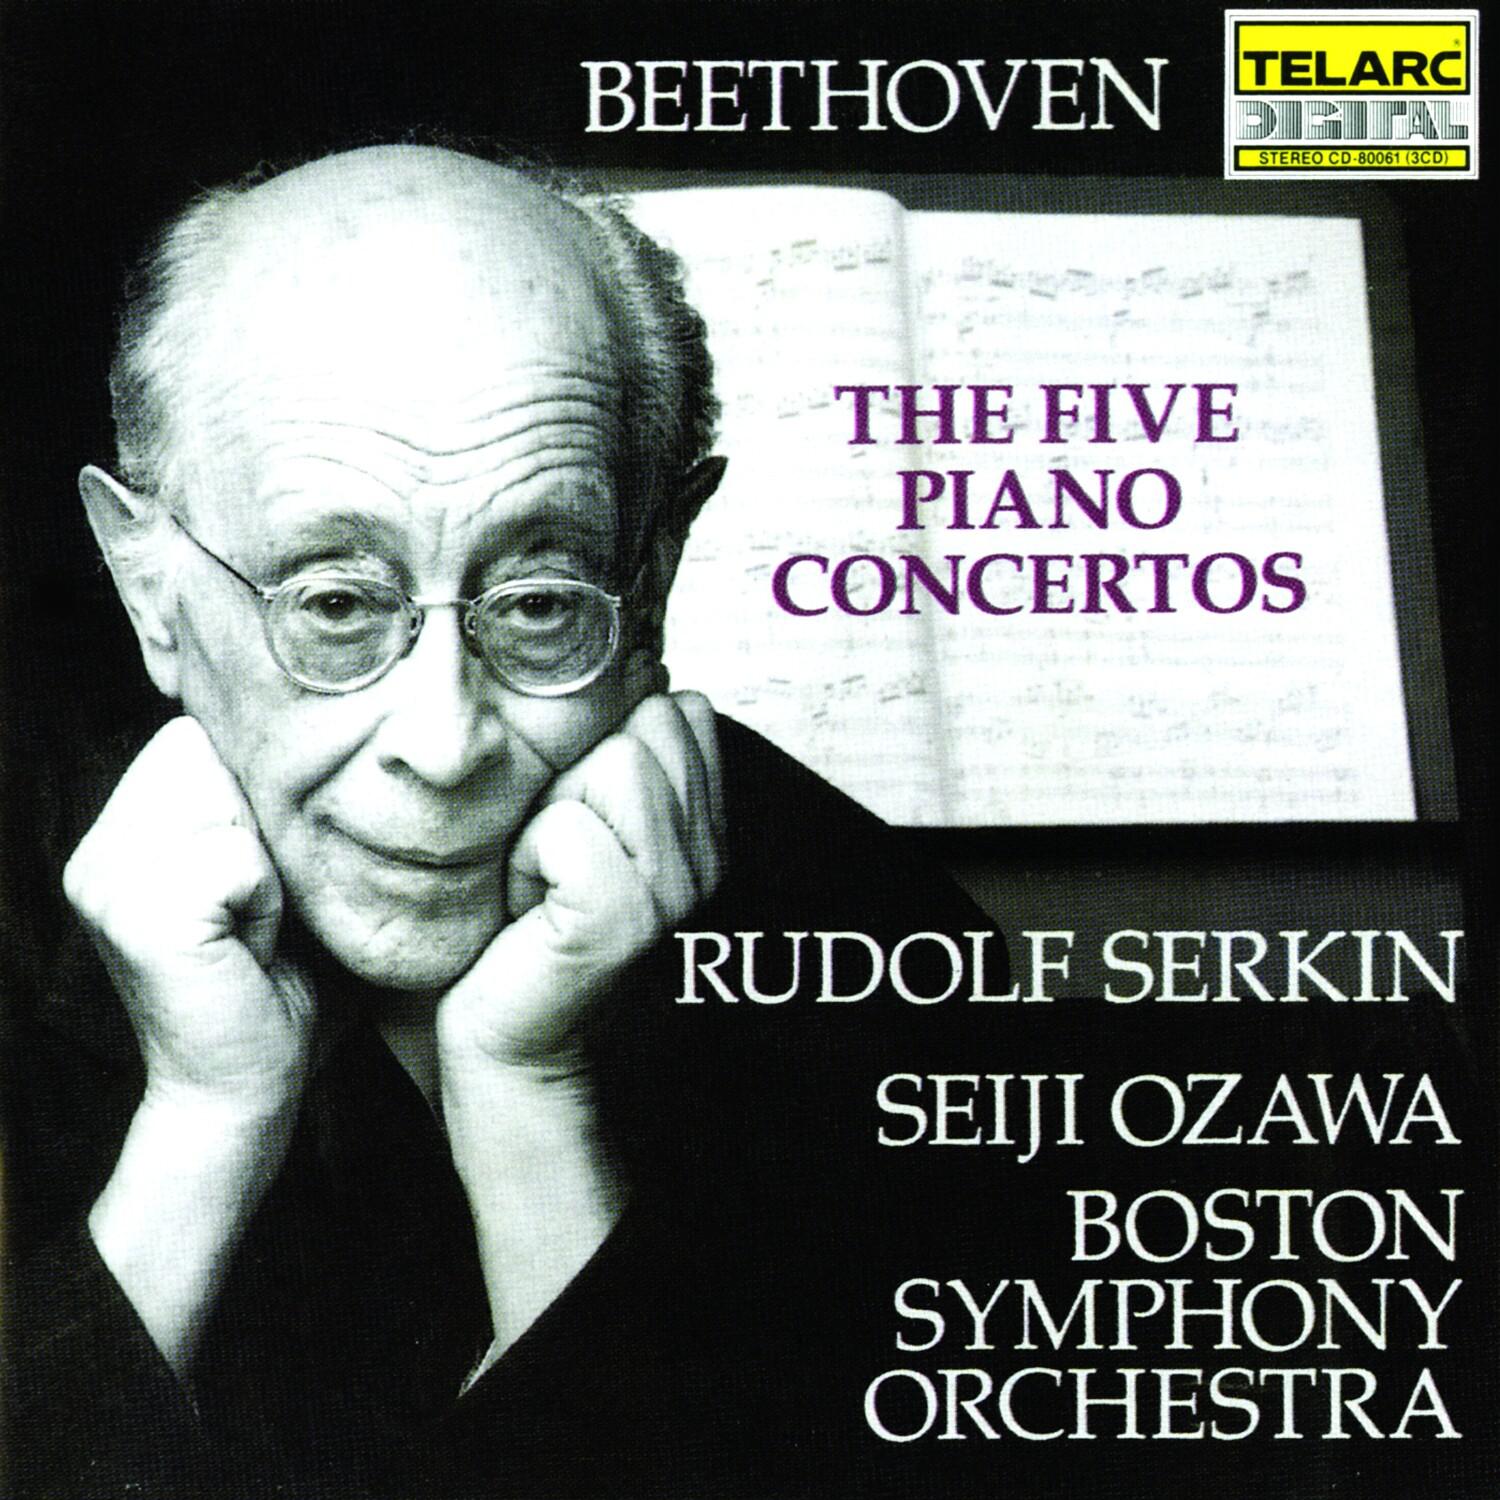 Concerto No. 1 in C, Op. 15: III. Rondo: Allegro scherzando